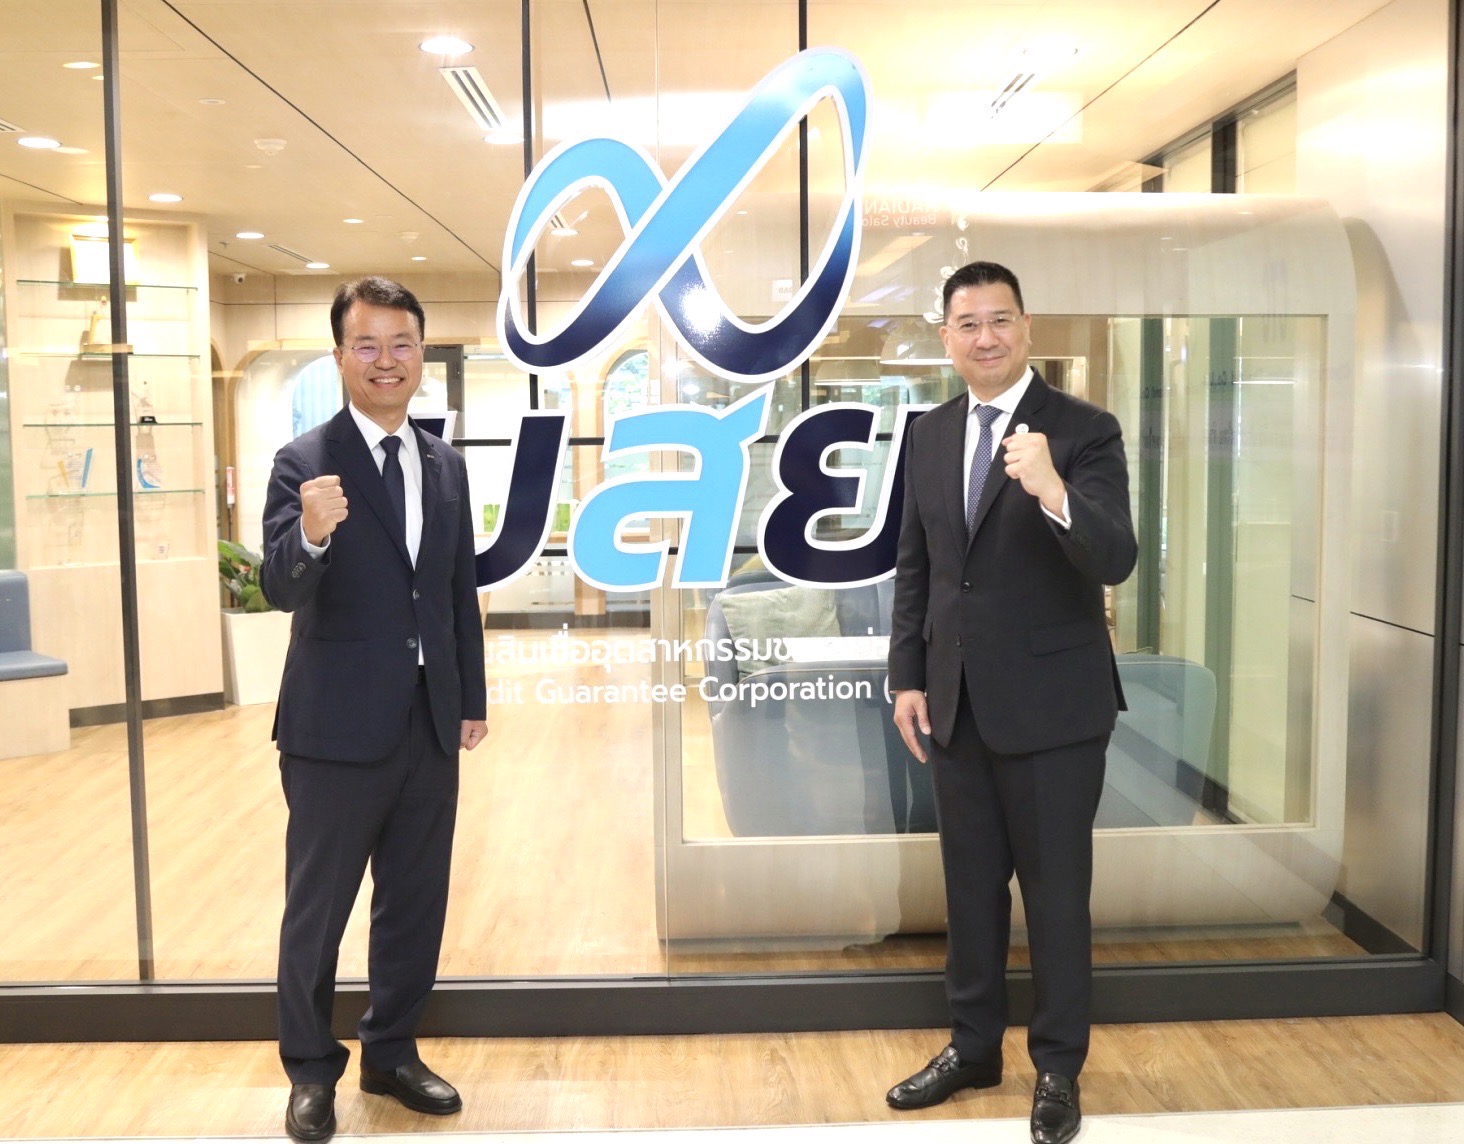 บสย. - สถาบัน KOTEC สาธารณรัฐเกาหลี เปิดเวที WLC แลกเปลี่ยนความรู้ค้ำประกัน การประเมินและบริหารความเสี่ยง